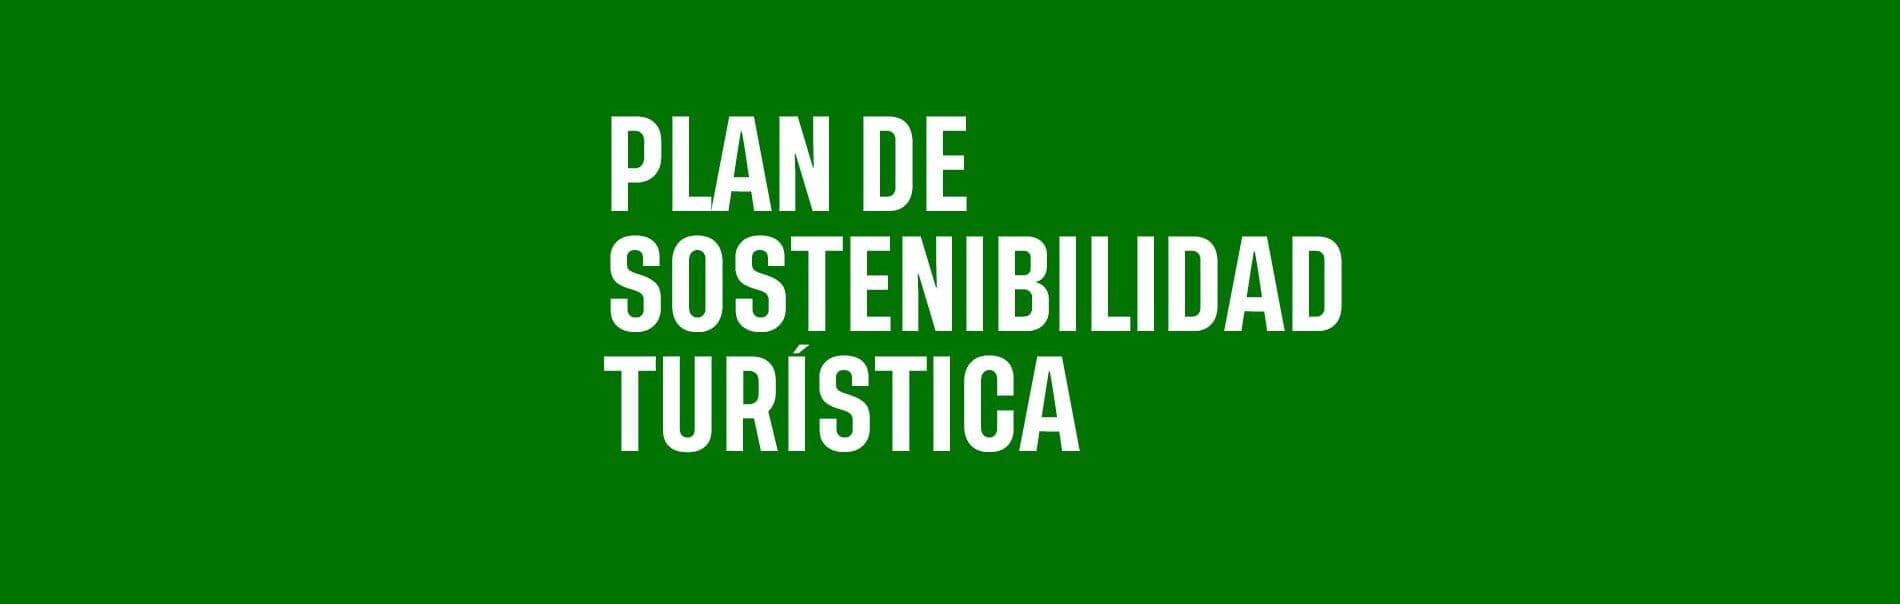 Plan de sostenibilidad turística en destinos. Torrelavega 4.0, hacia el 035